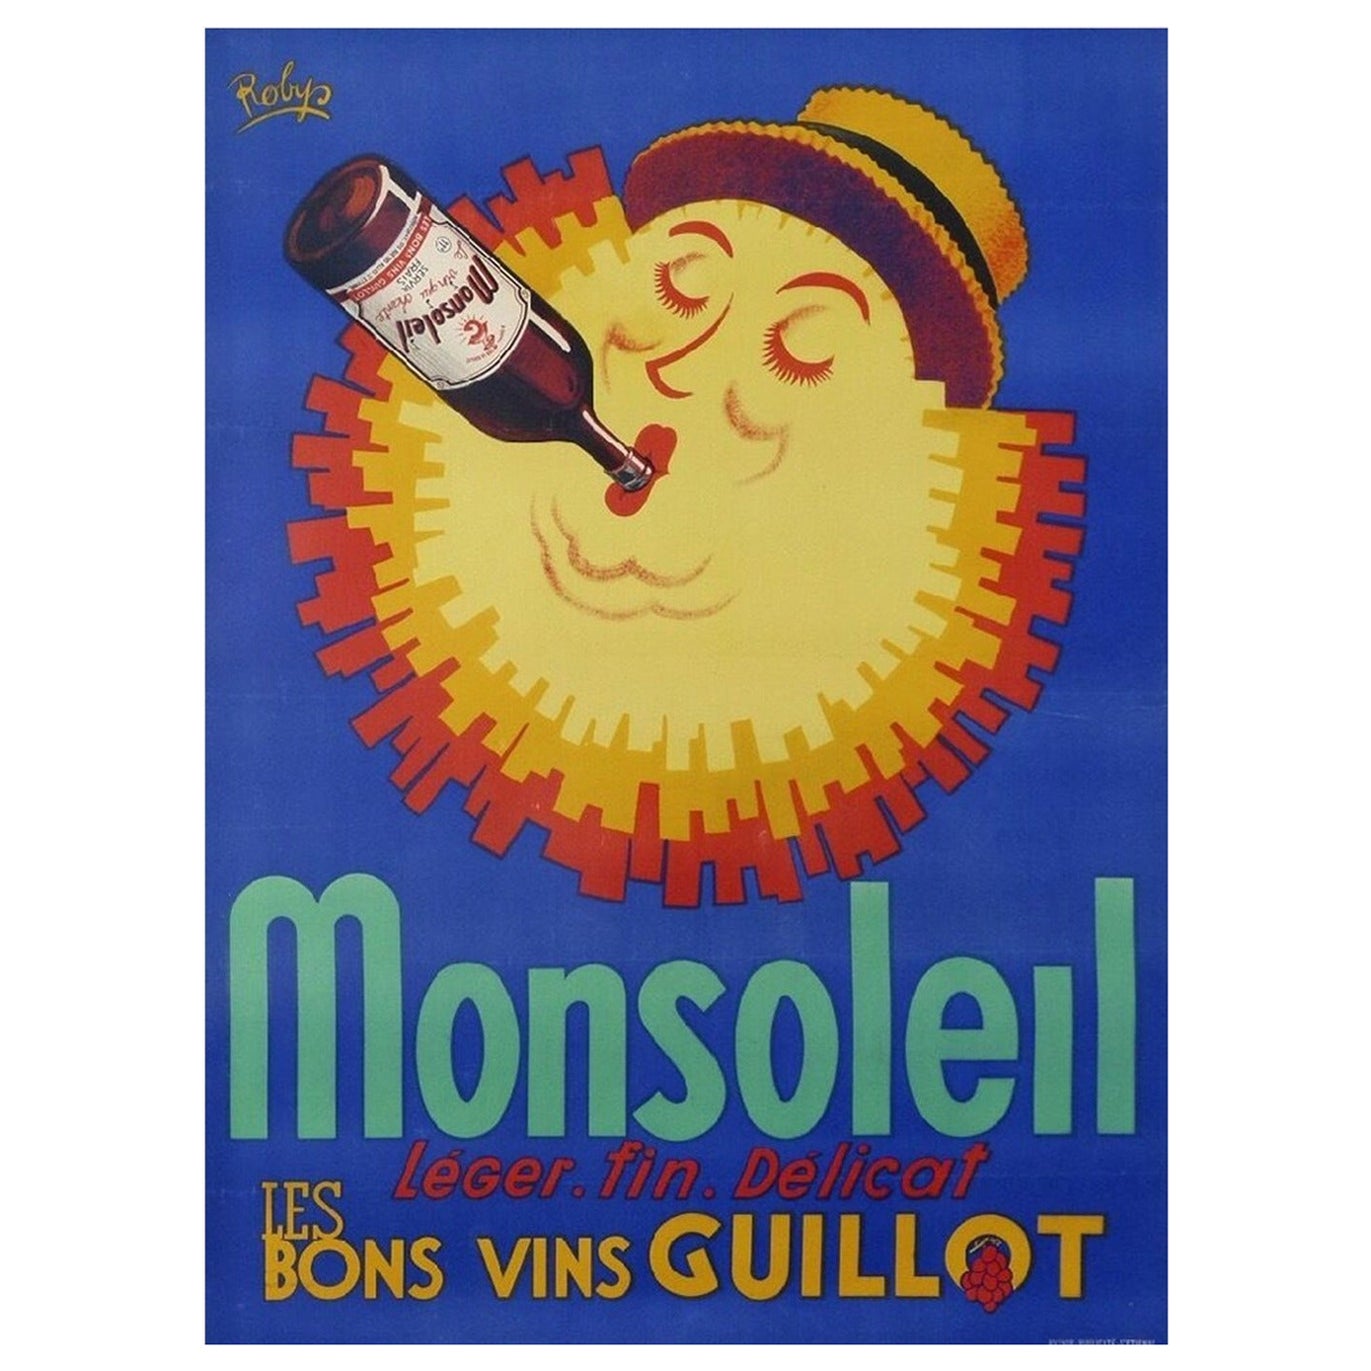 Monsoleil Original-Vintage-Poster, 1930